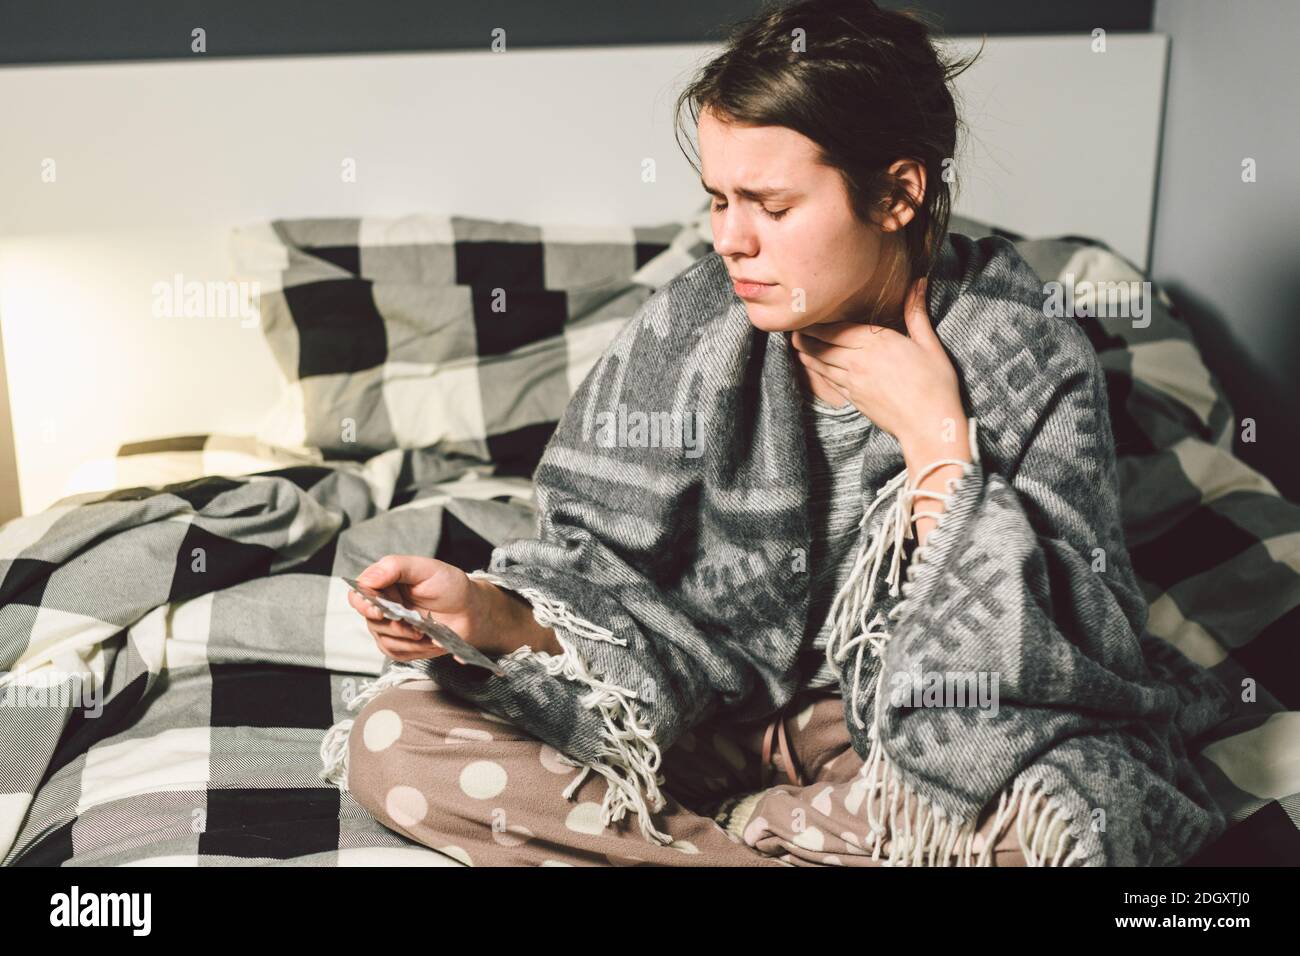 Das Thema ist Atemwegserkrankungen und Hausmittel. Schöne junge Frau ist krank mit einer Erkältung sitzen im Schlafzimmer auf dem Bett Stockfoto